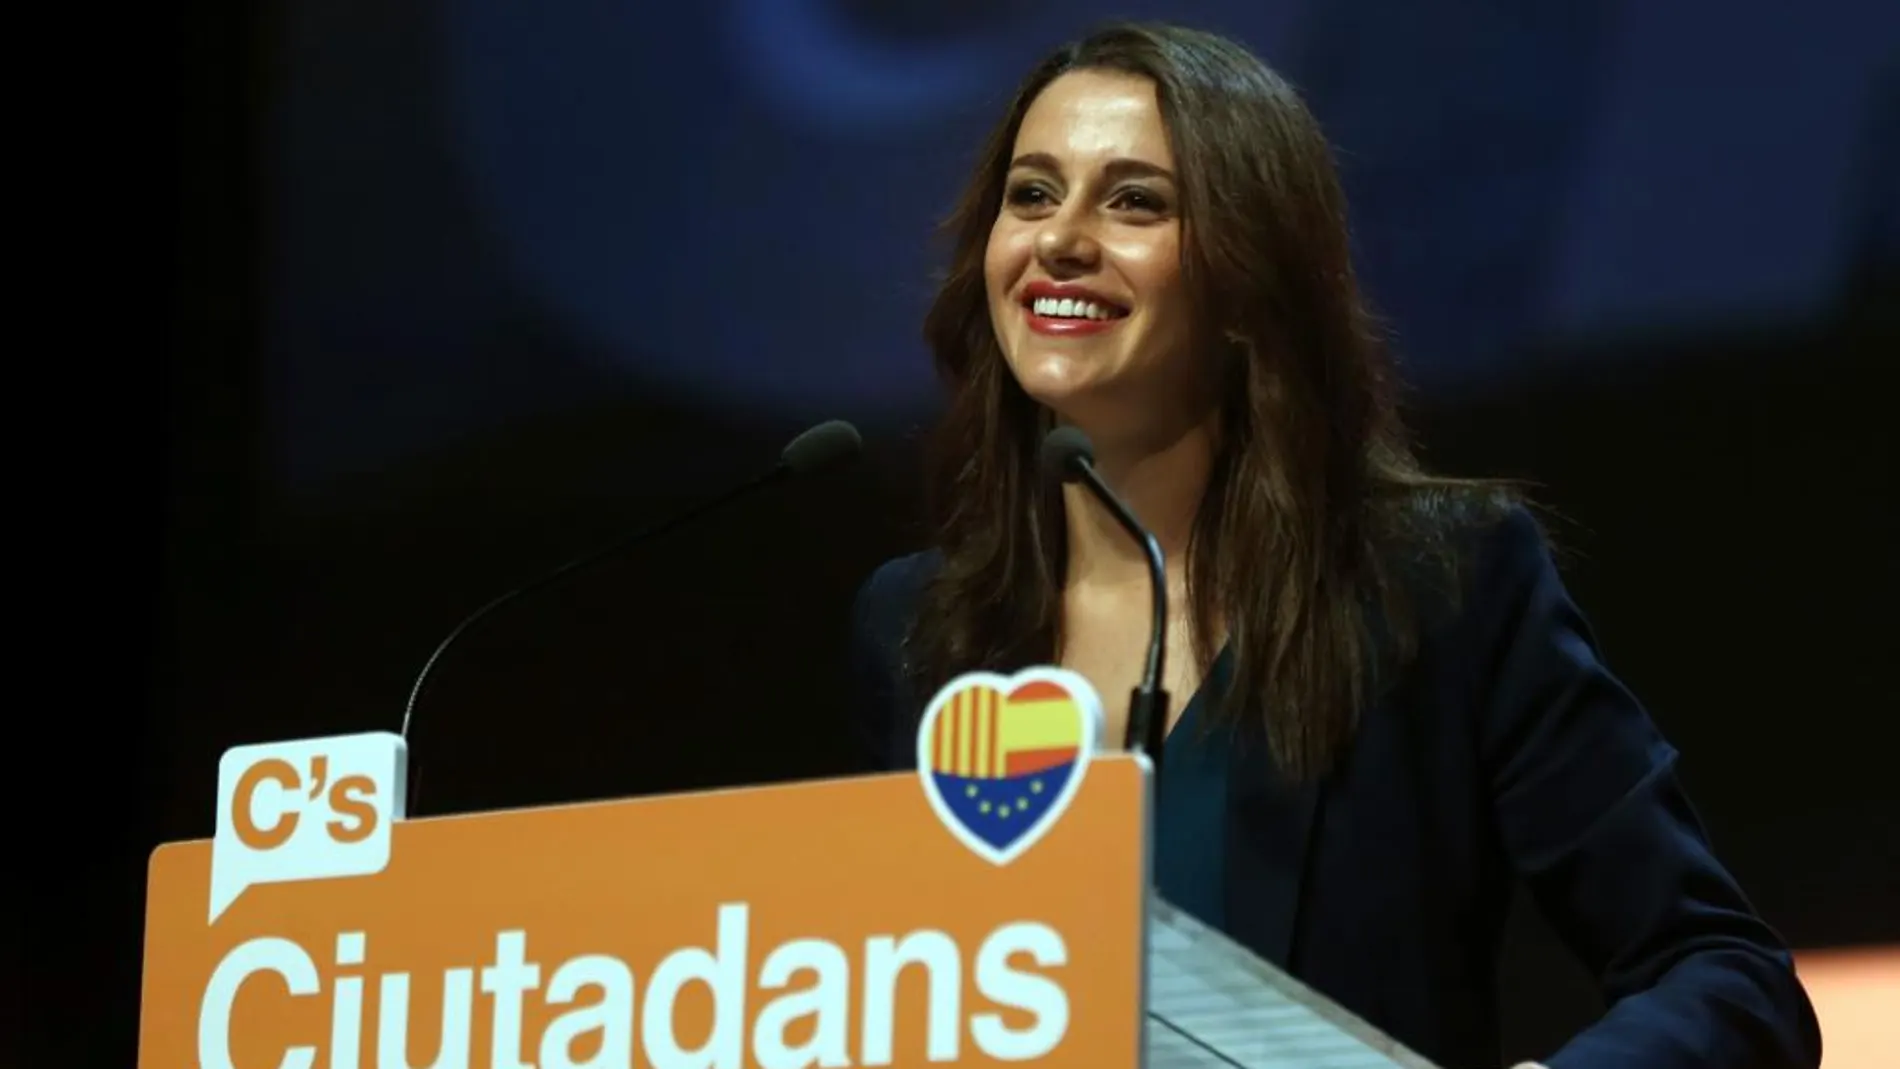 La candidata de Ciudadanos a la Generalitat, Inés Arrimadas, durante una intervención en un acto en Barcelona.